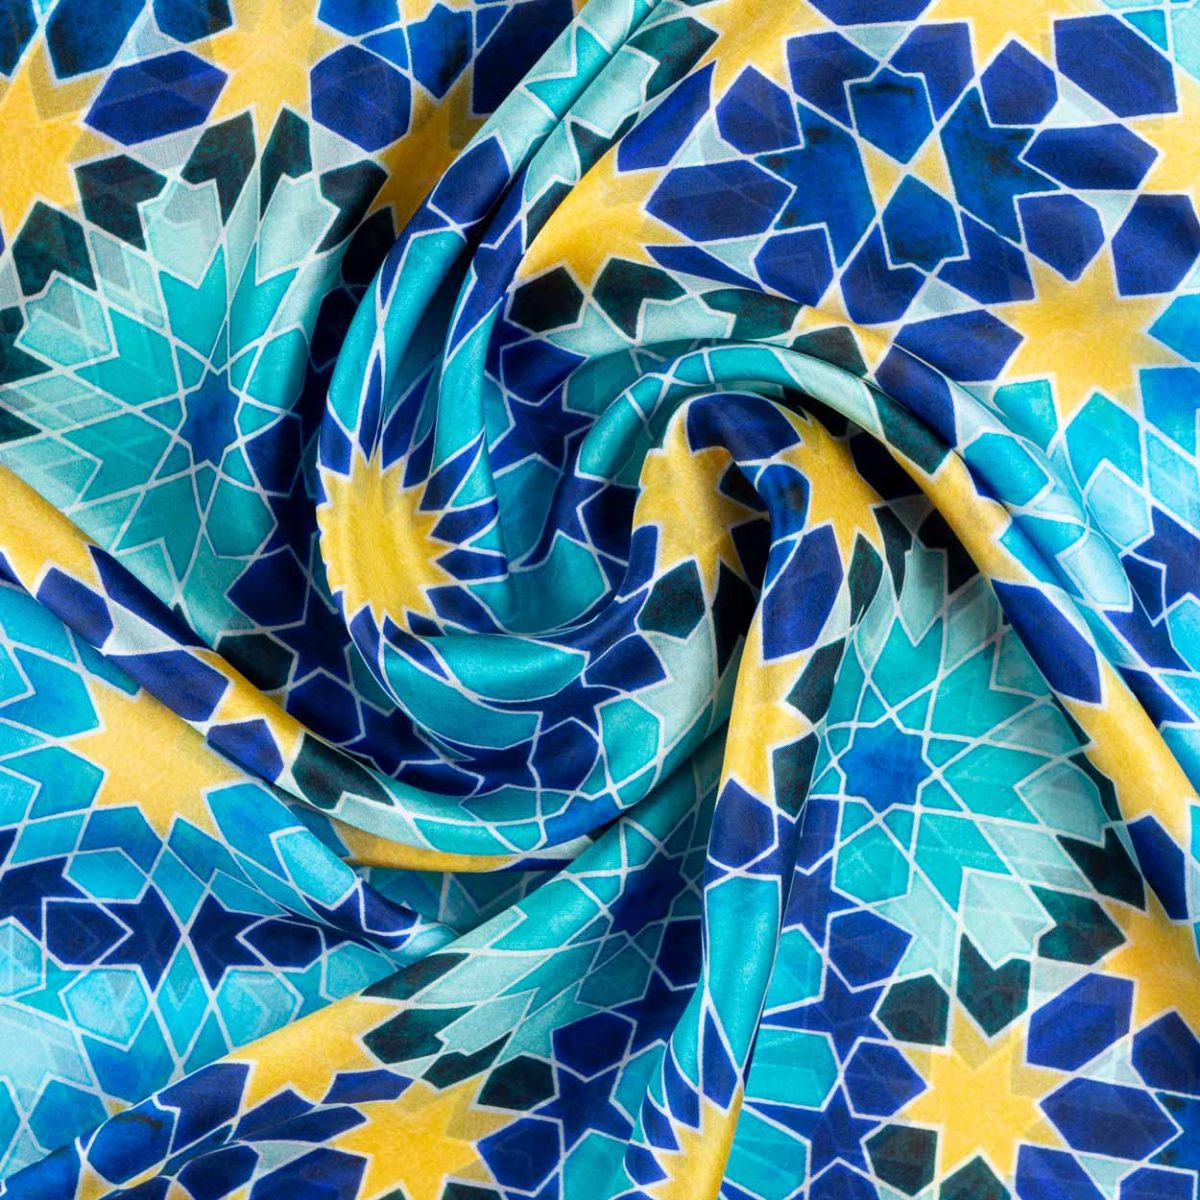 Detalle de pañuelo de seda azul y amarillo con estampado geométrico